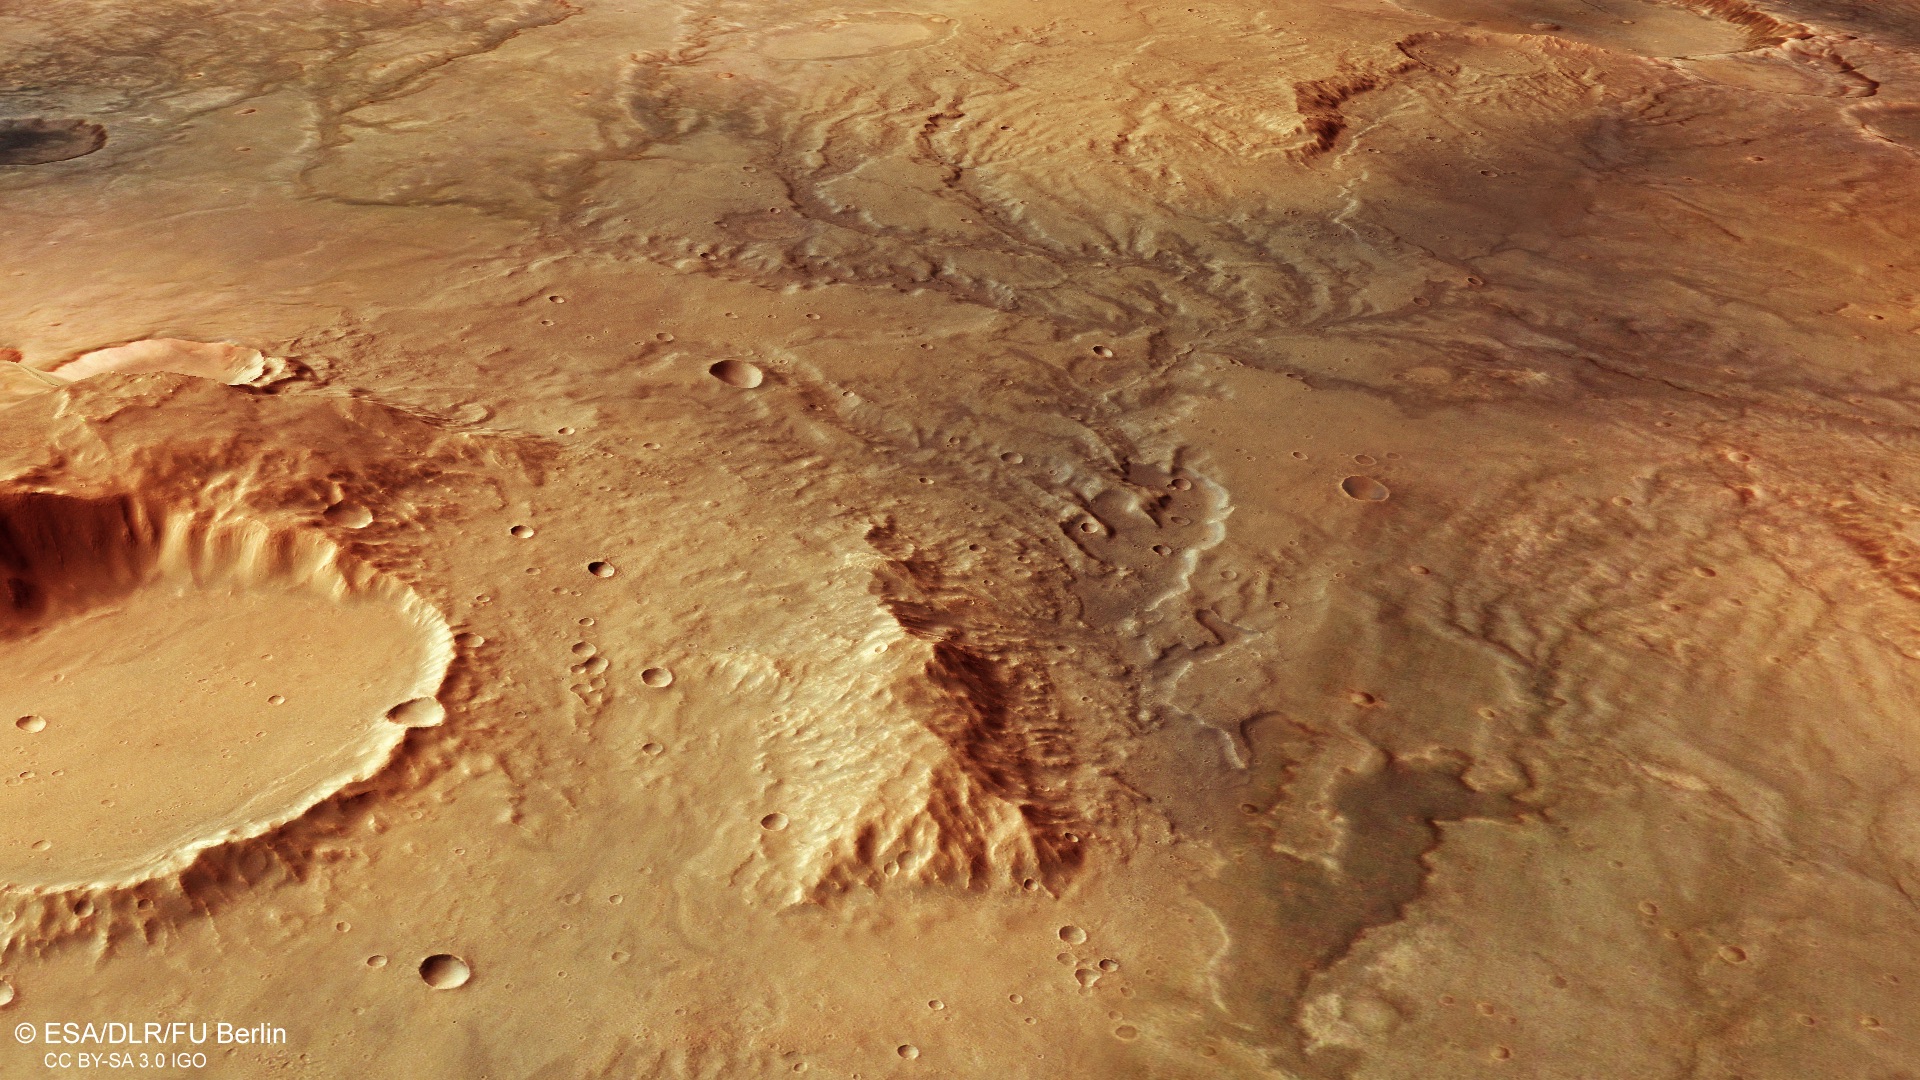 Vue en perspective des traces d'anciennes vallées fluviales repérées par le satellite Mars Express de l'ESA en novembre 2018 dans l'hémisphère sud de la Planète rouge. © ESA, DLR, FU Berlin, CC by-sa 3.0 IGO